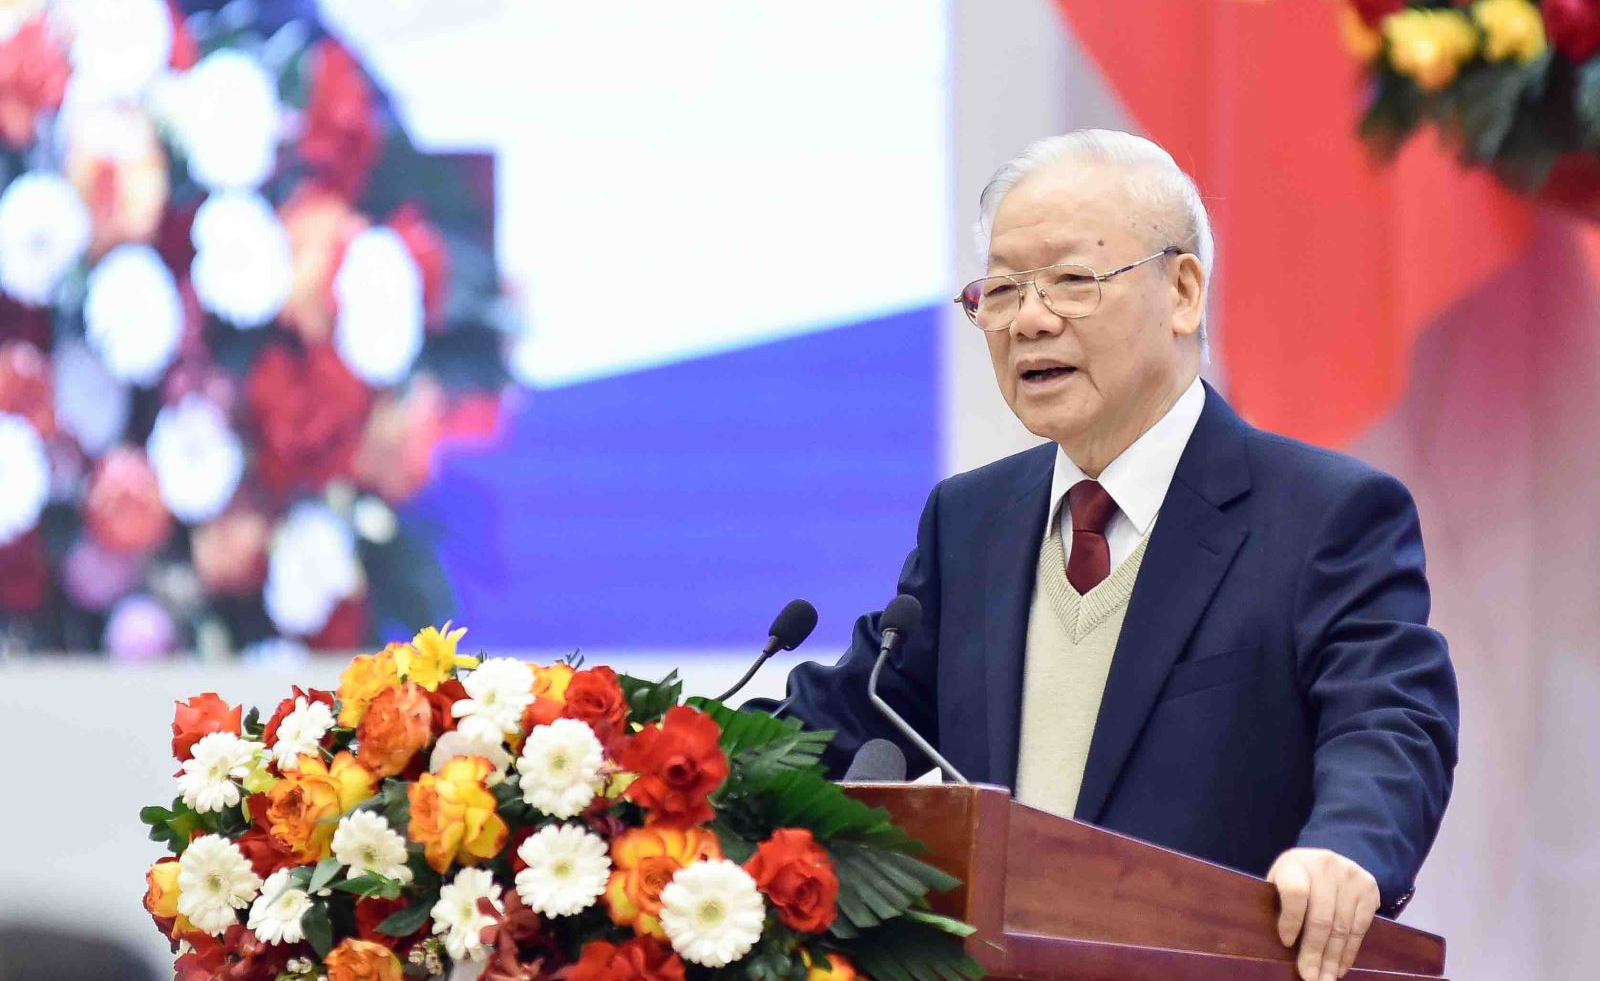 Một số điểm mới trong nhận thức về kinh tế thị trường định hướng xã hội chủ nghĩa ở Việt Nam trong Văn kiện Đại hội XIII